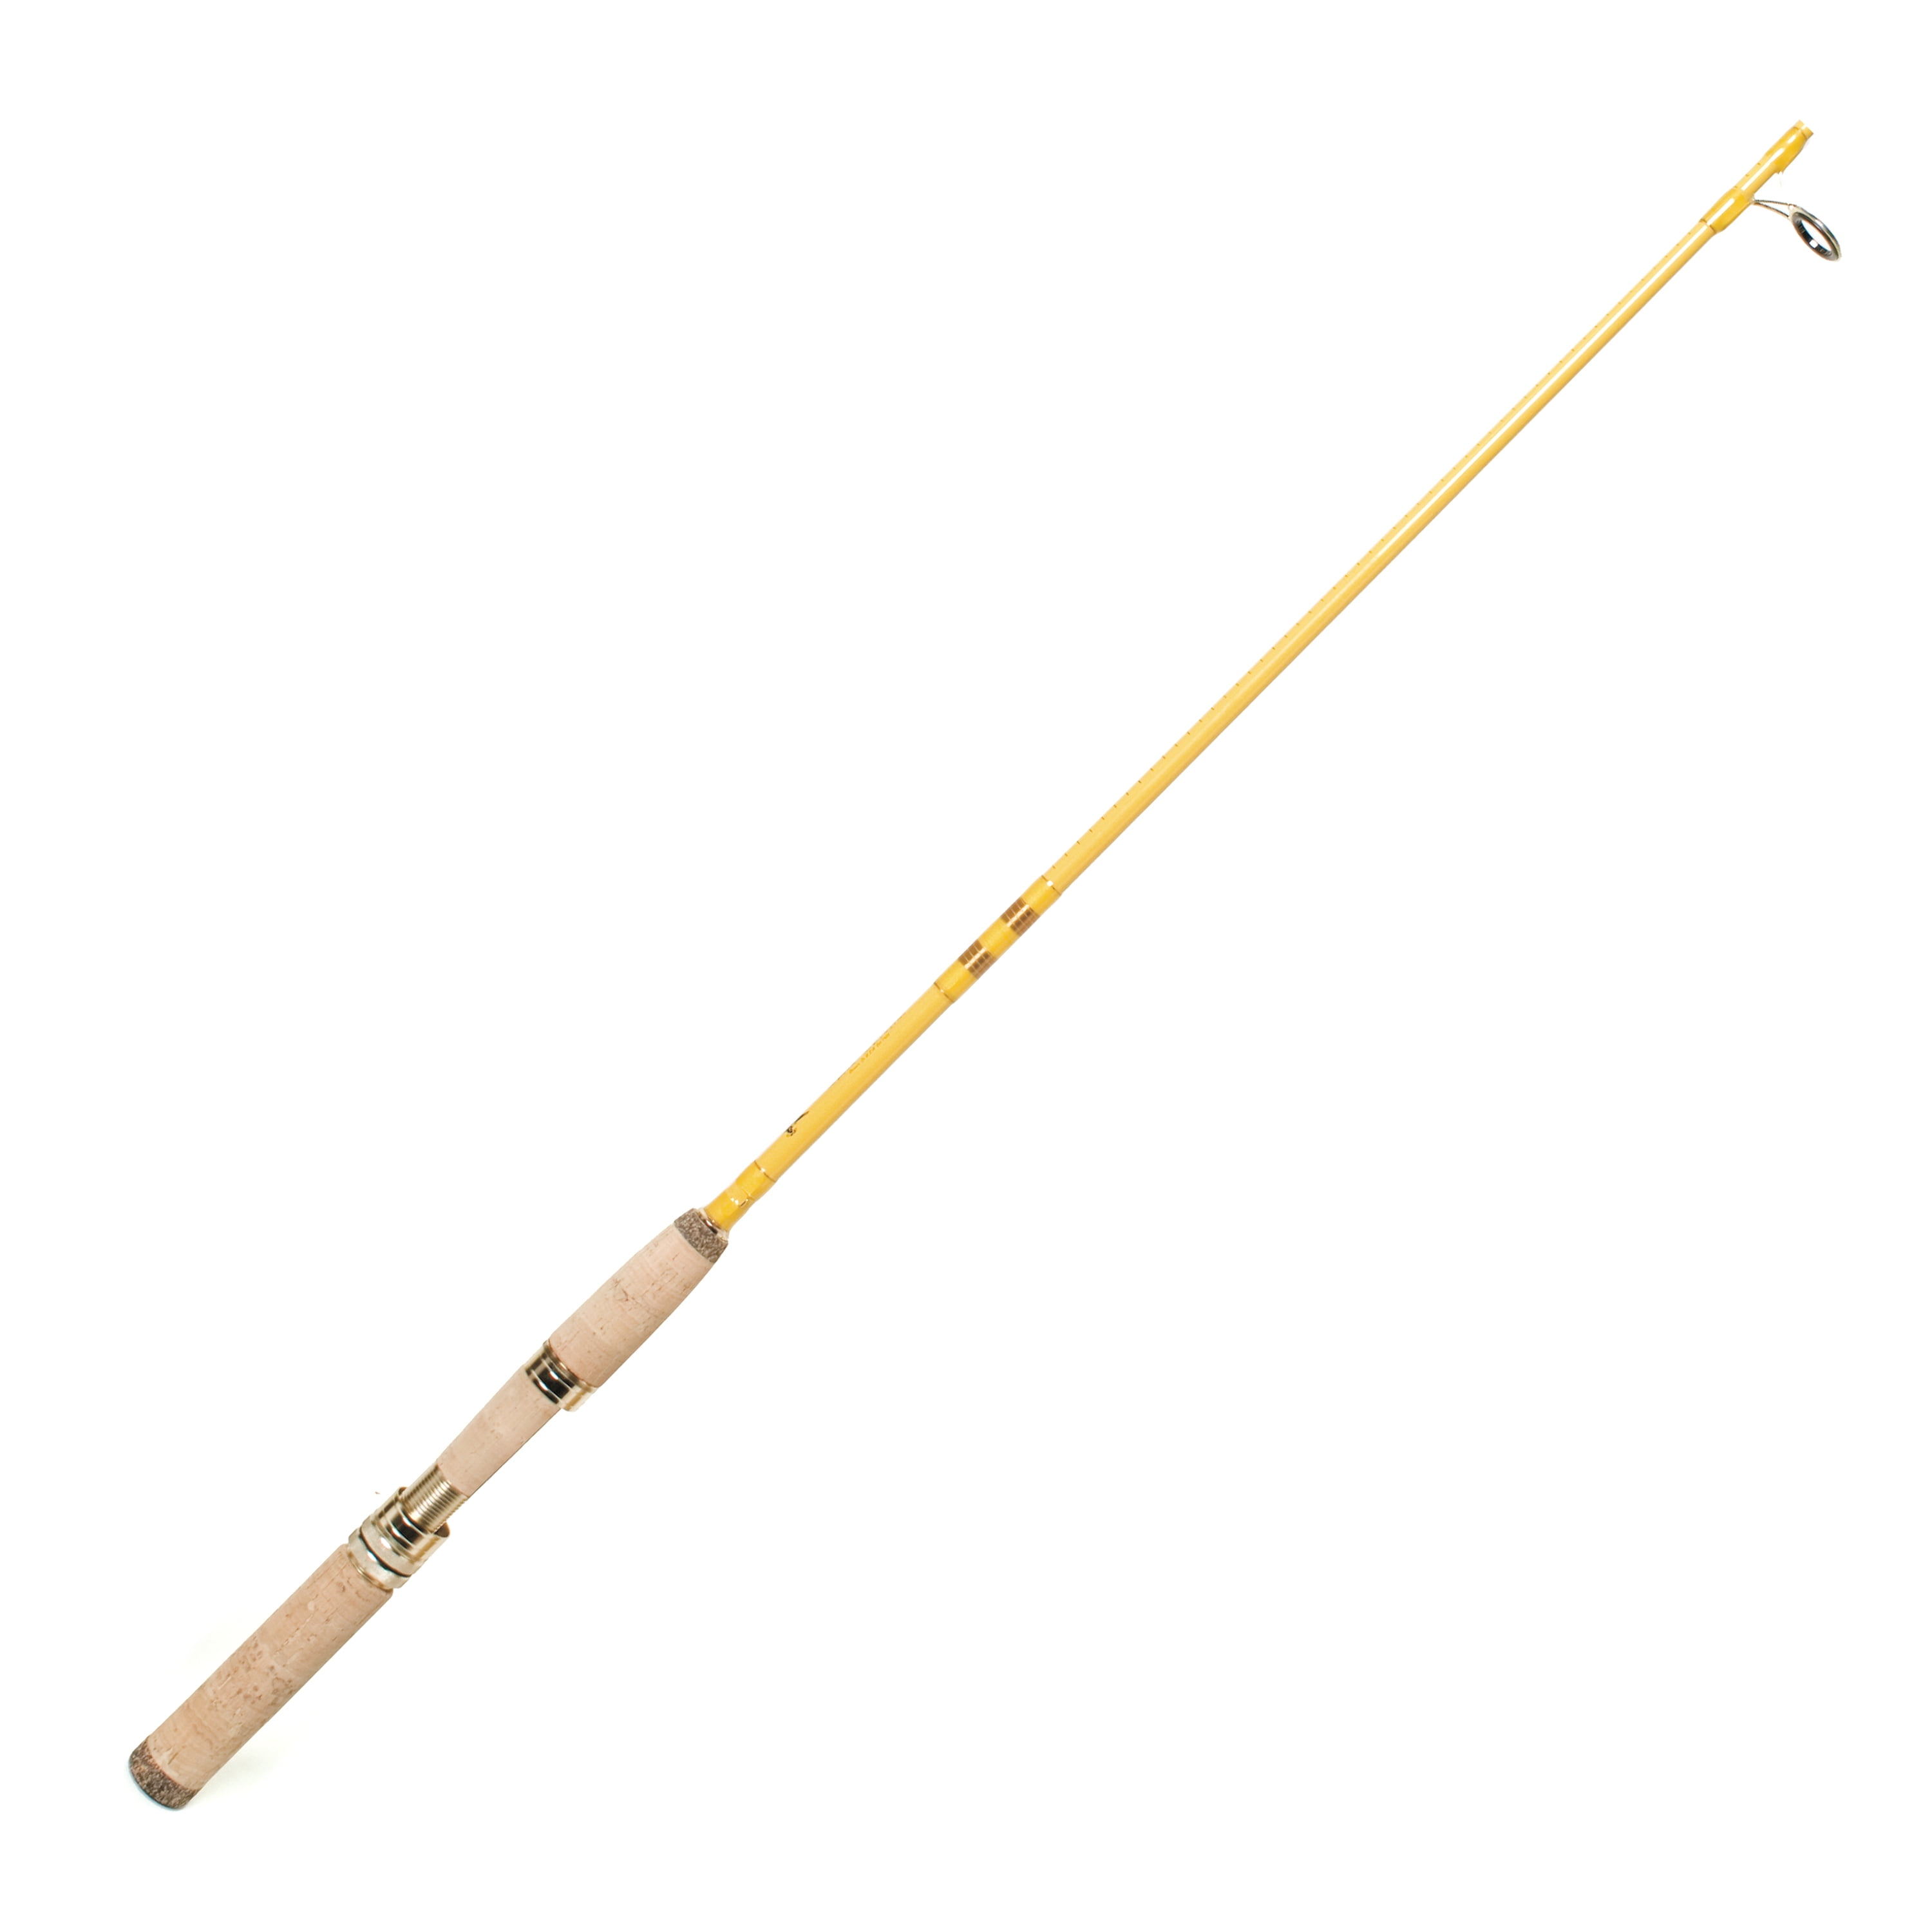 Okuma Celilo CE-S-502UL-1 5' Fishing Rod for sale online 